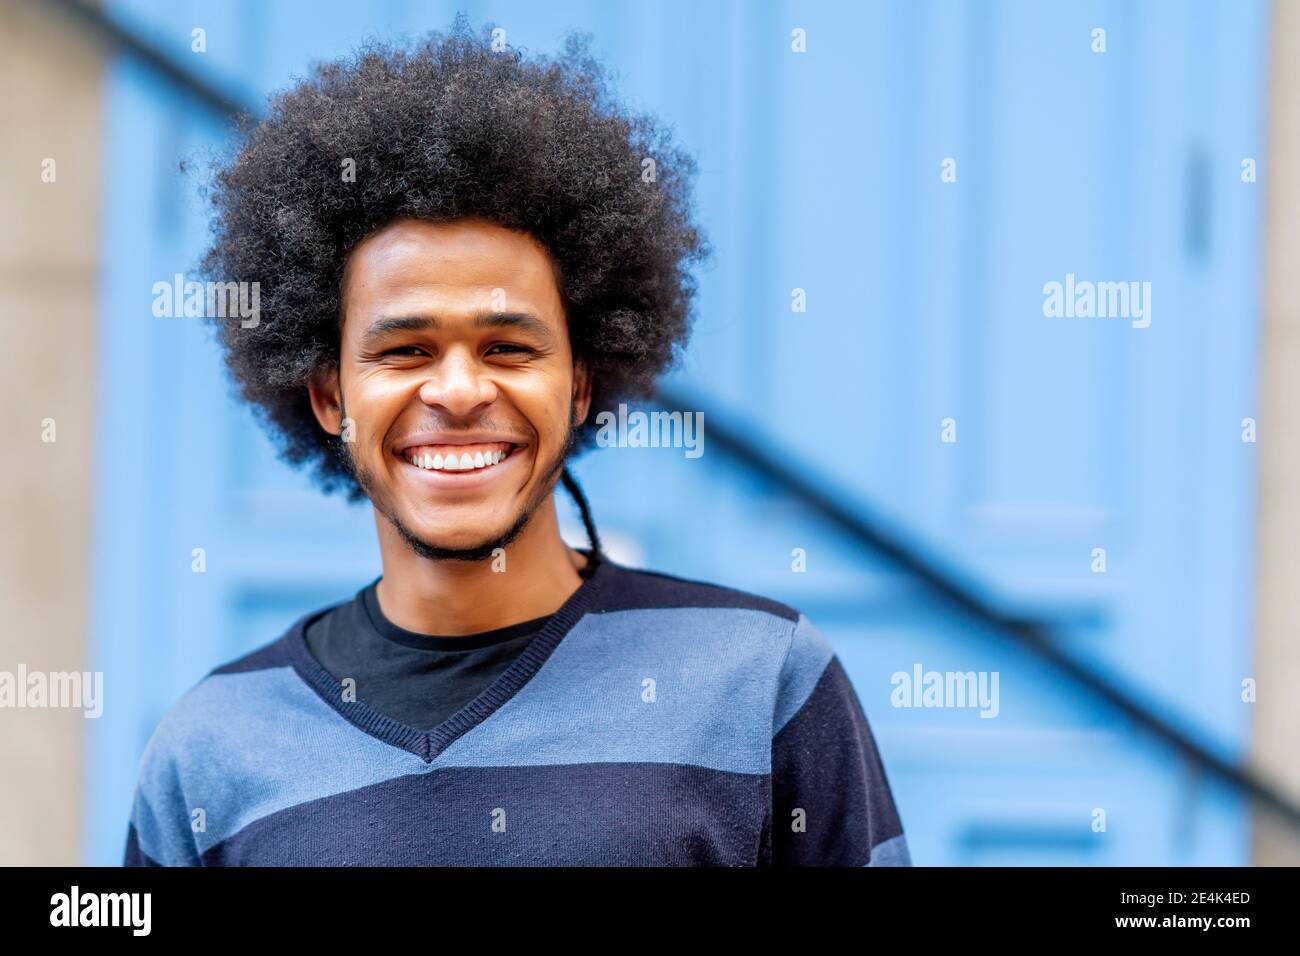 Nahaufnahme eines lächelnden jungen Mannes mit lockigen Haaren an der Wand Stockfoto